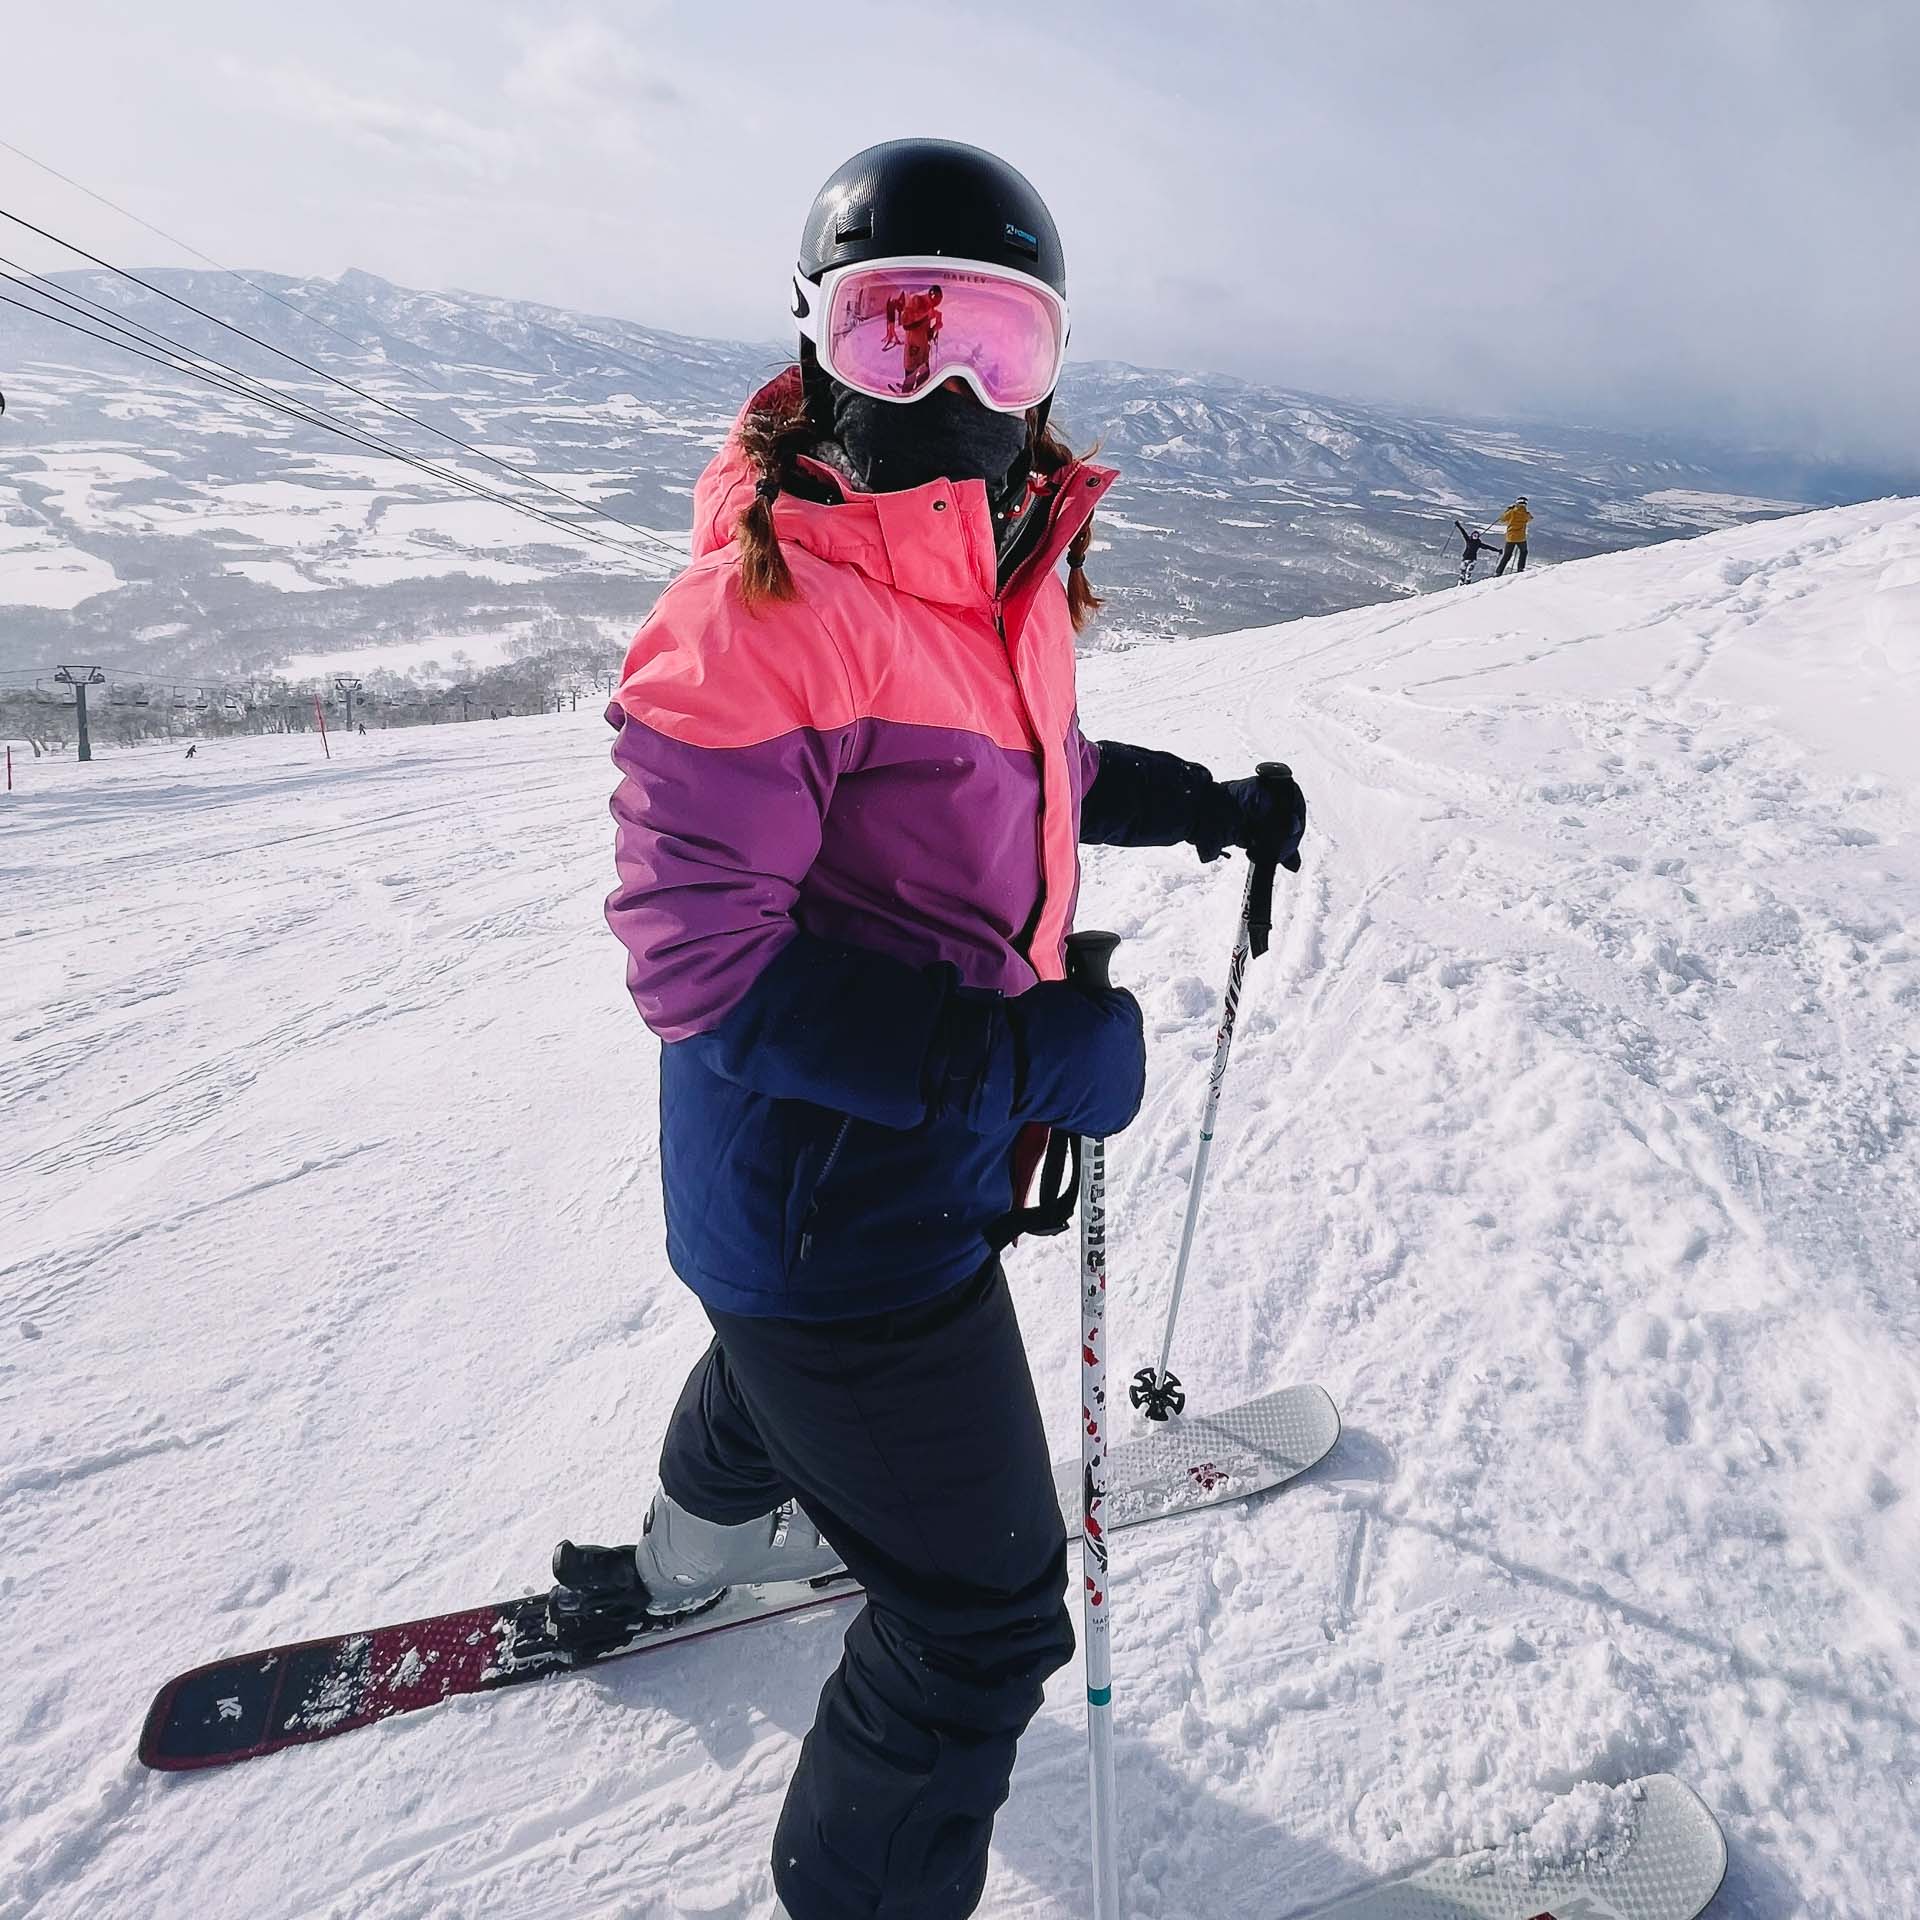 Skiing in Japan: Why Niseko Is Best For Beginners, Photo by Ally Burnie, skiing, japan, niseko, skiing guide, Allie Burnie on ski slopes in niseko